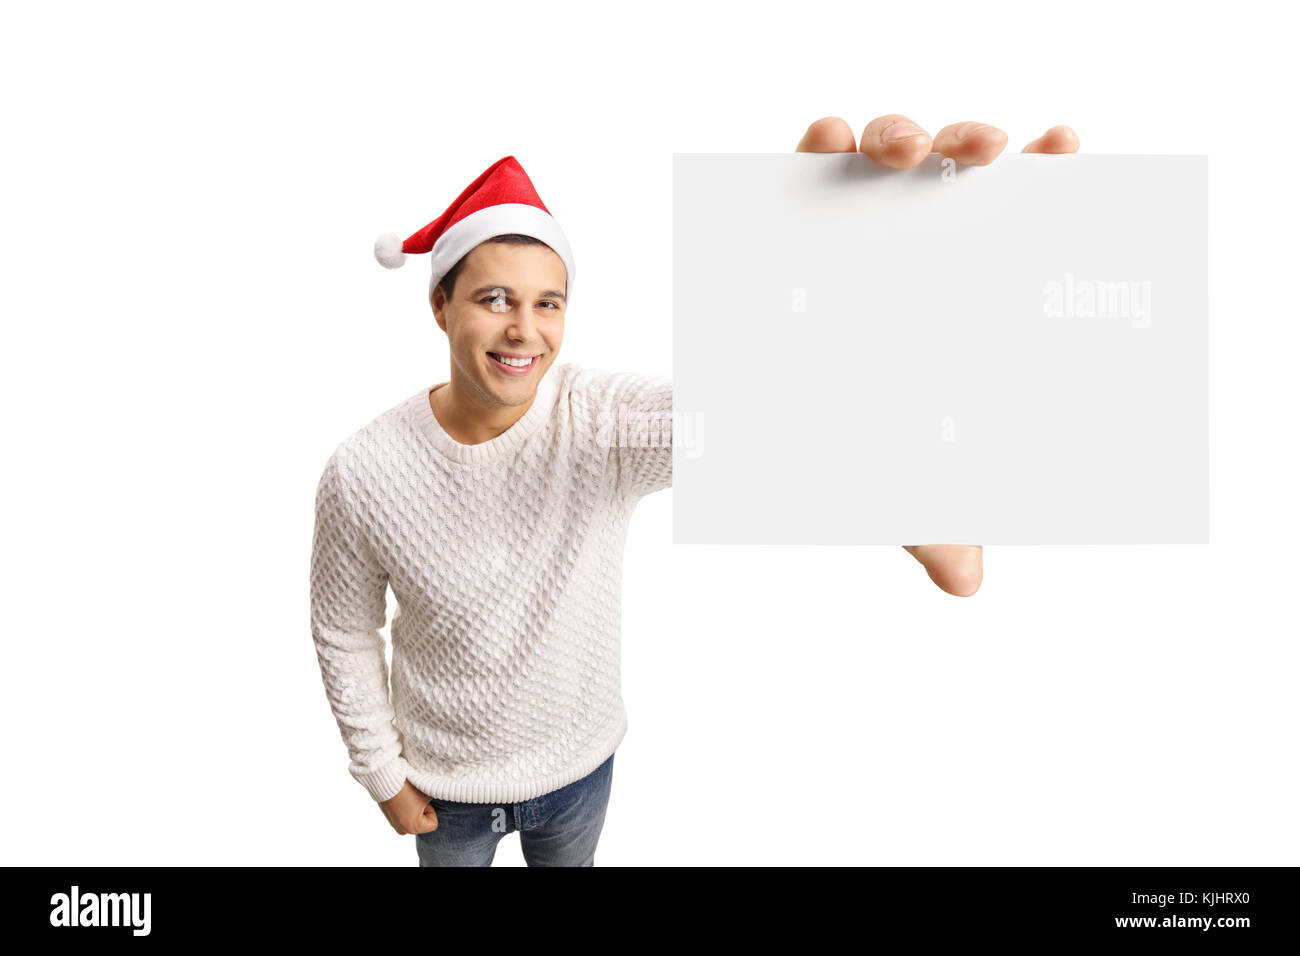 Les jeunes gars avec un chapeau de Noël montrant une carte vierge isolé sur fond blanc Banque D'Images